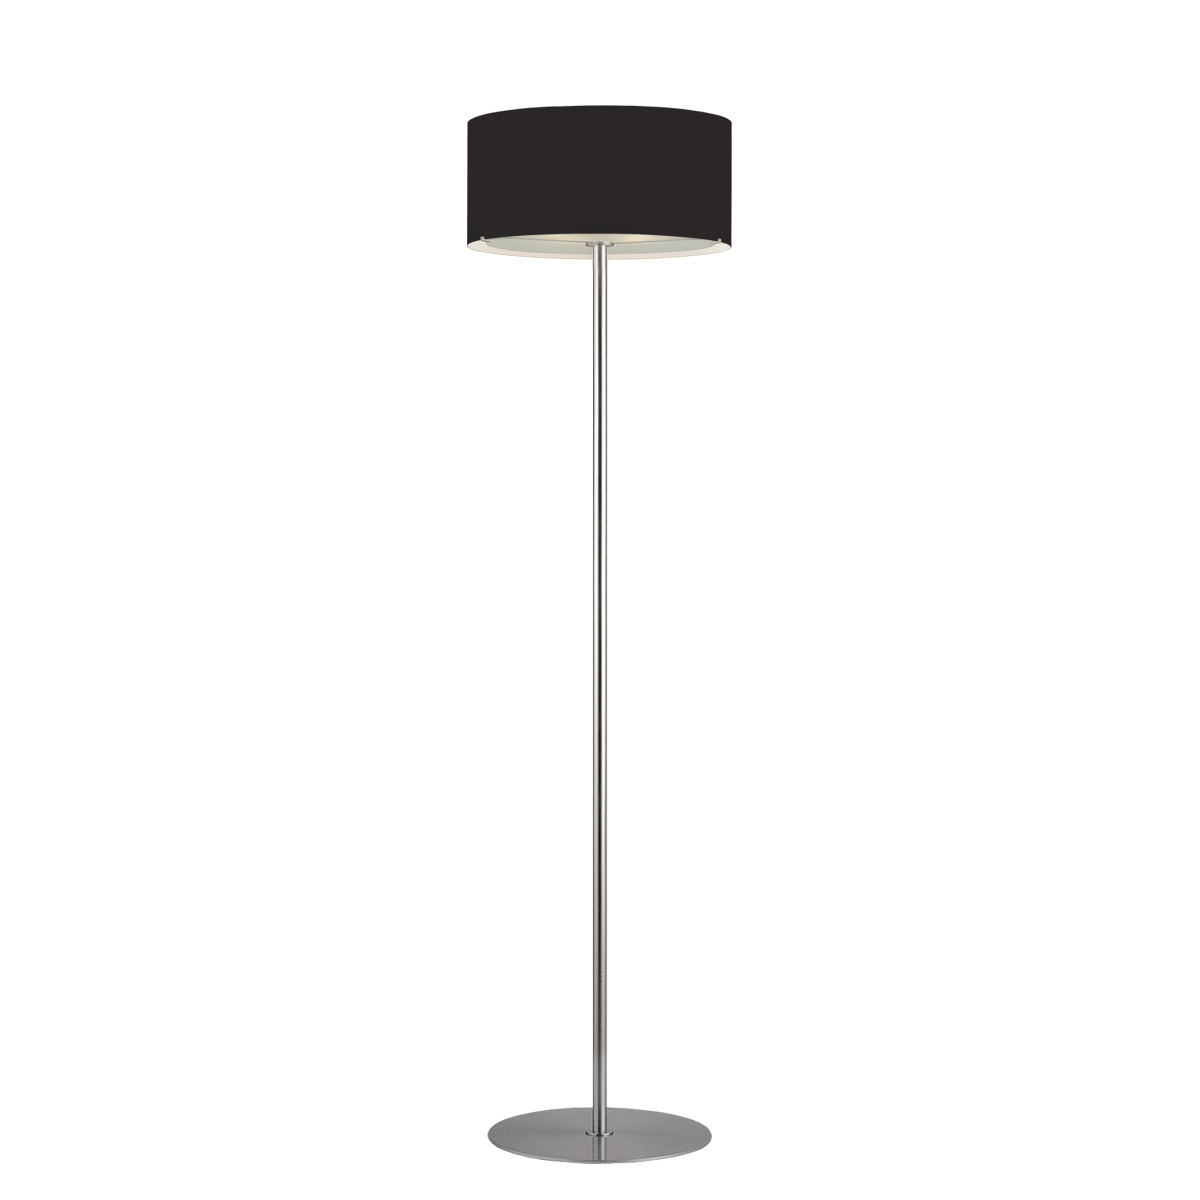 Μοντέρνο φωτιστικό δαπέδου Μουράνο ΚΥΛΙΝΔΡΟΙ modern black Murano floor lamp